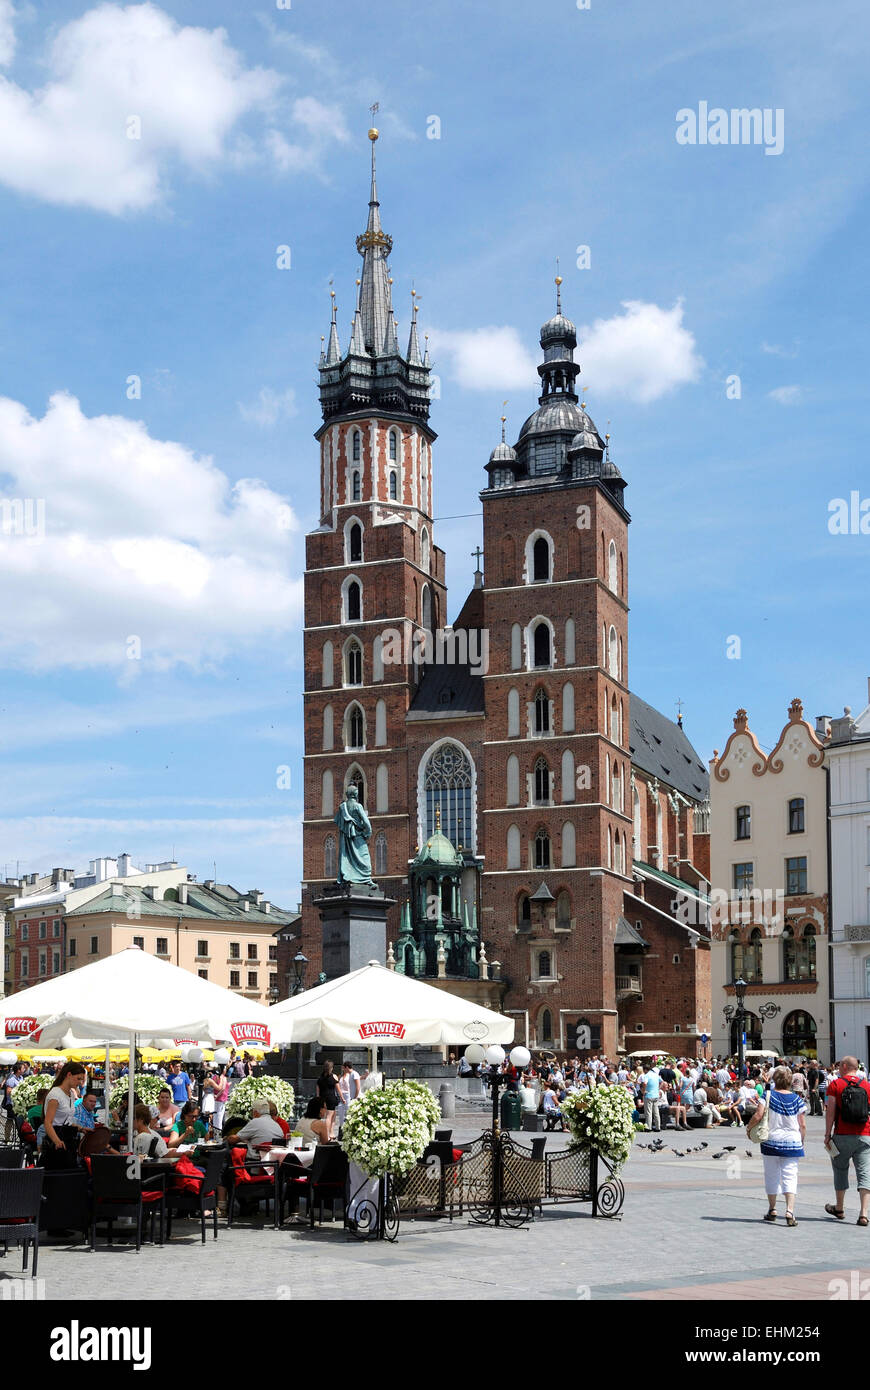 Café de la rue avec les touristes en face de l'église Sainte Marie sur le marché principal de Cracovie en Pologne. Achtung : Nur zur redaktion Banque D'Images